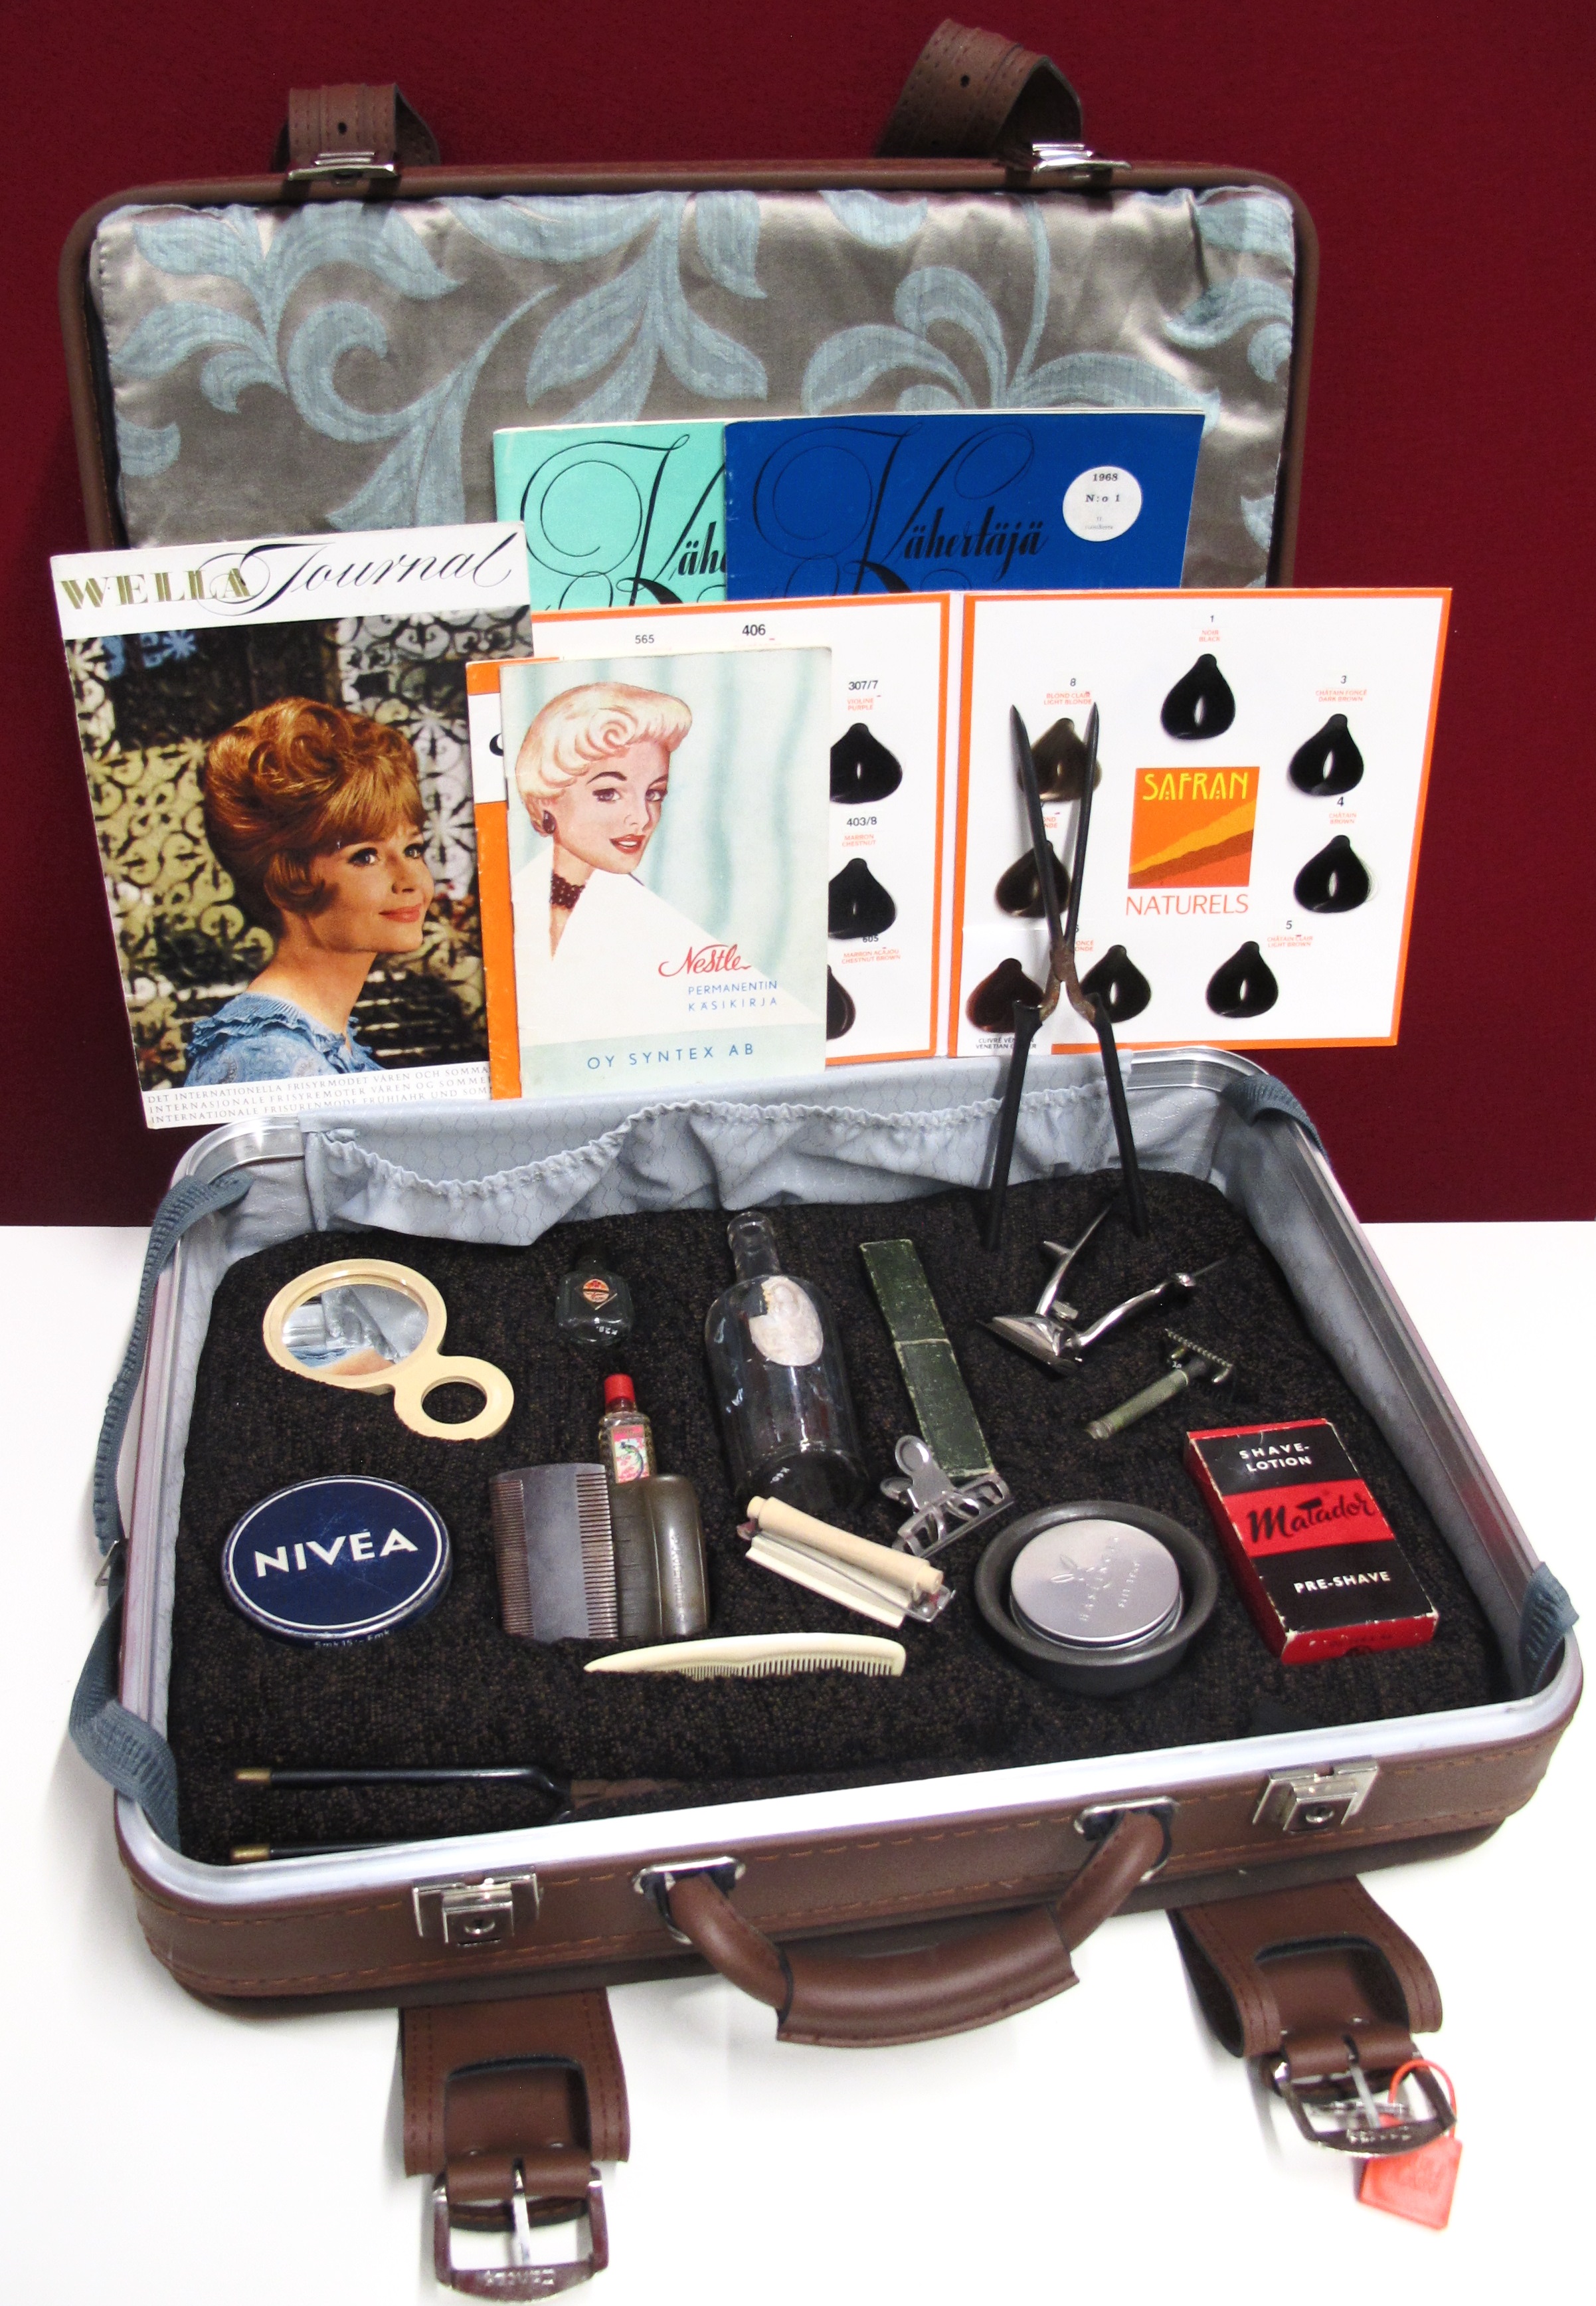 Vanha matkalaukku, jonka sisällä kauneudenhoitoon liittyviä lehtiä ja esineitä kuten erilaisia kampoja ja erikokoisia pulloja, purkkeja ja peili